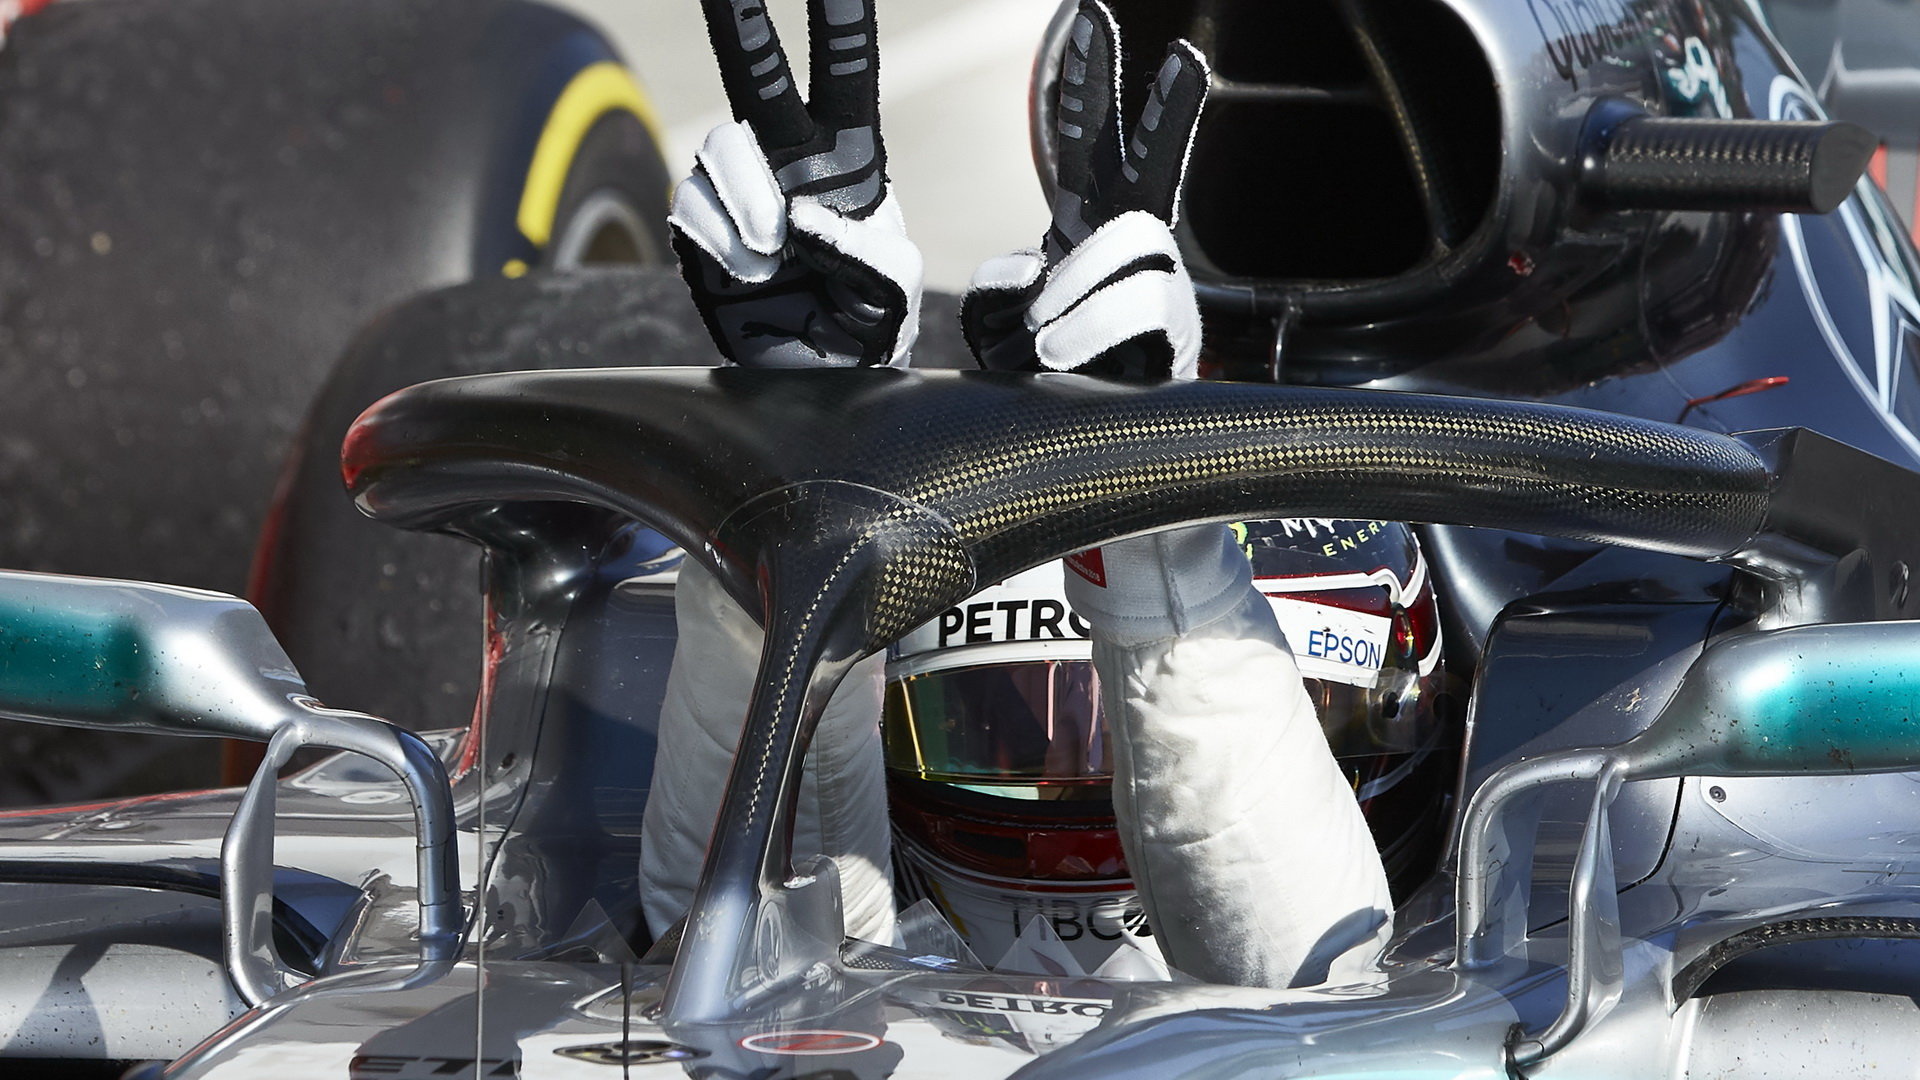 Lewis Hamilton se raduje z vítězství v závodě v Maďarsku